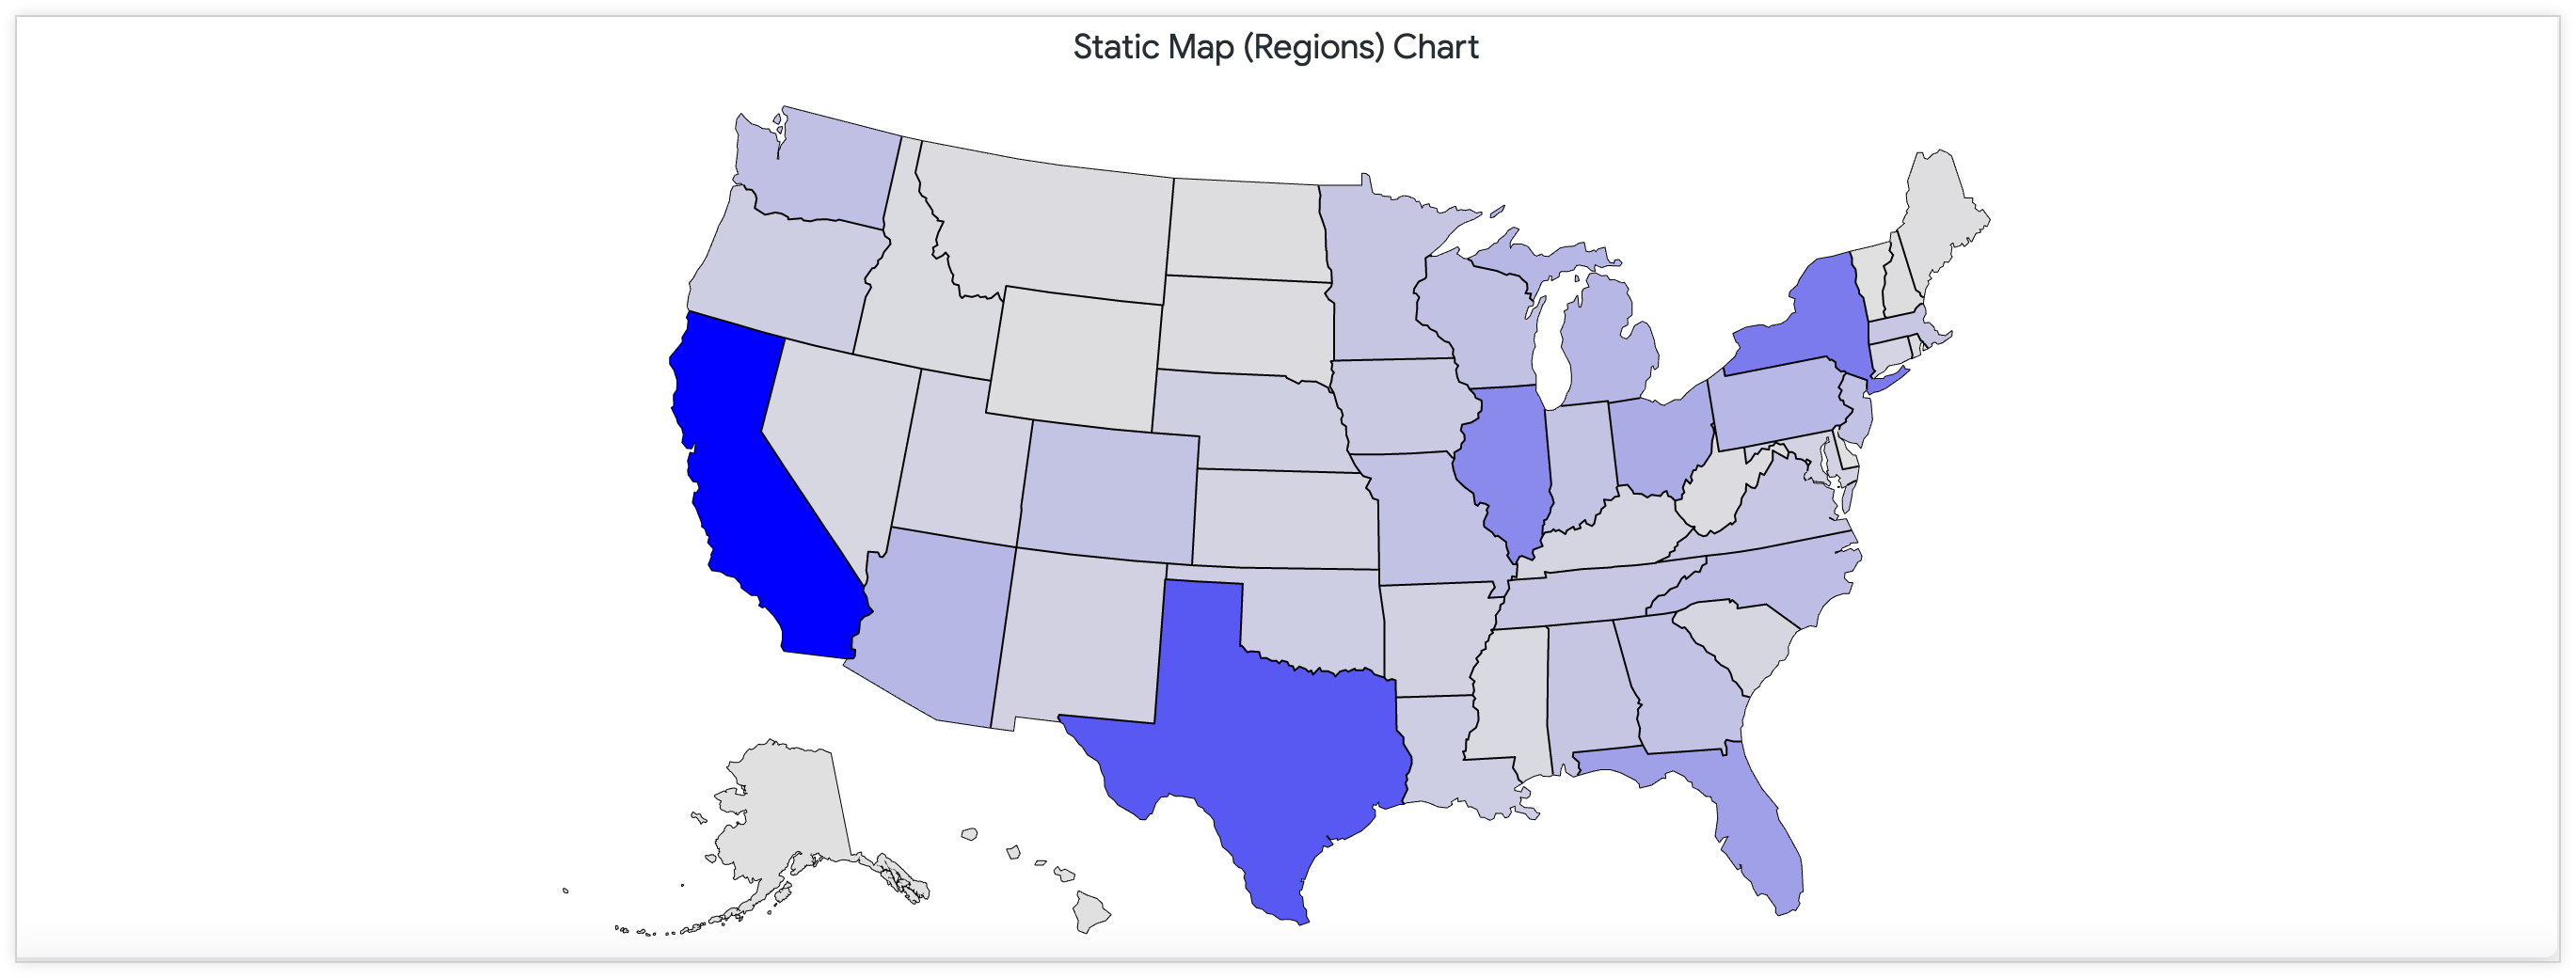 Mapa estático que muestra la cantidad de ubicaciones de las tiendas en Estados Unidos a través de una paleta de colores continua.